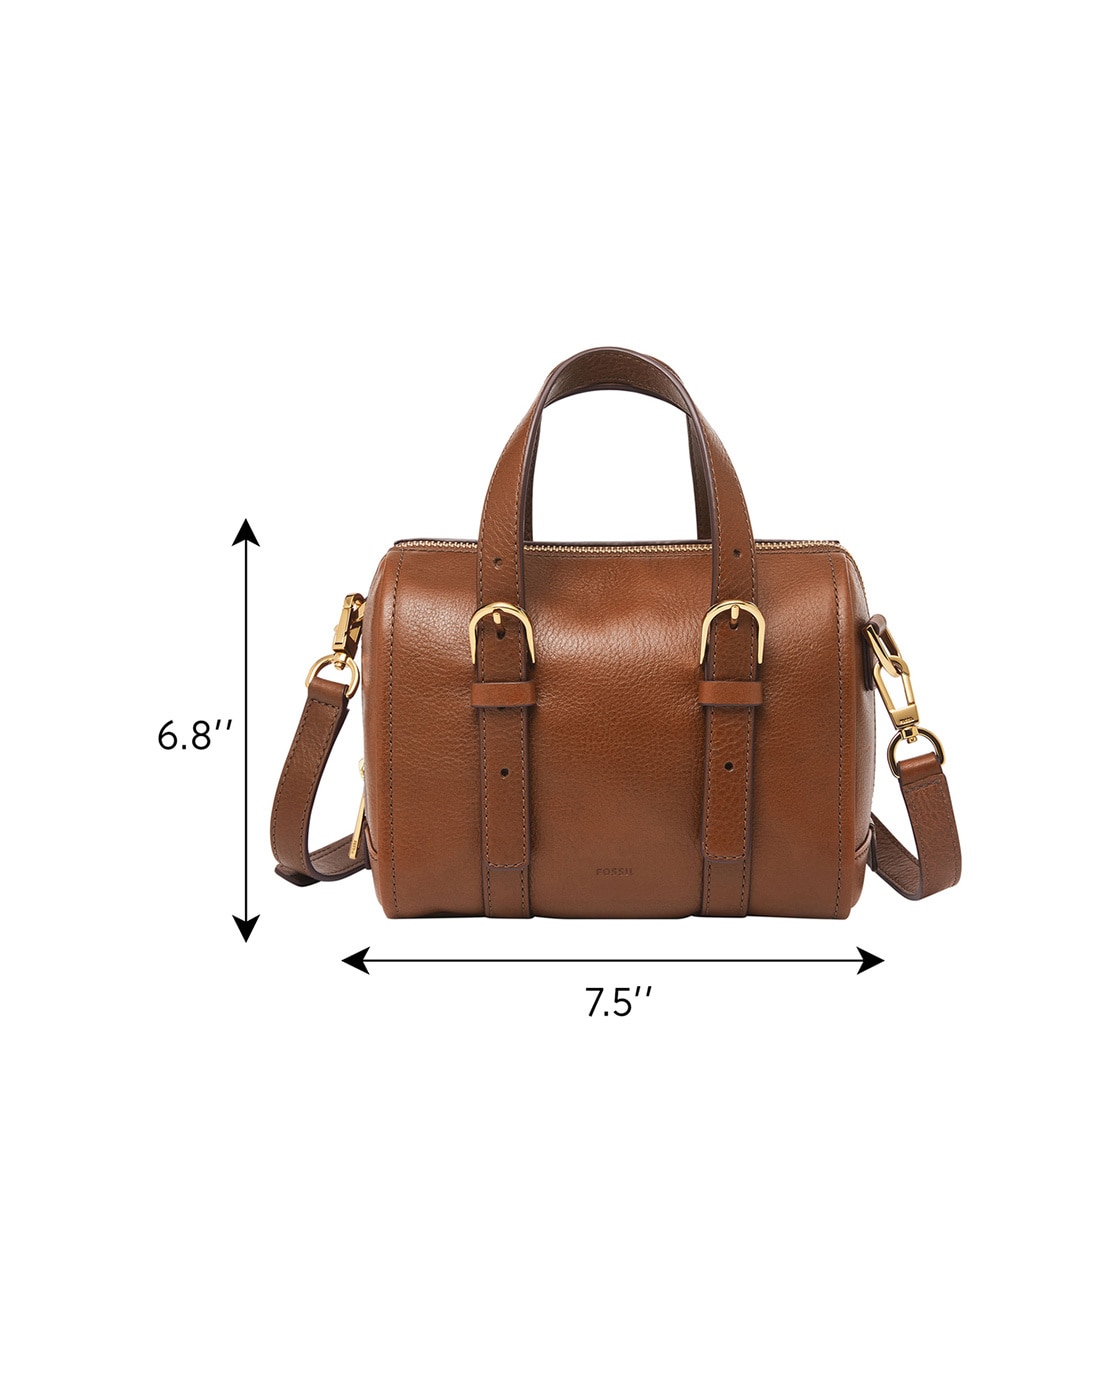 Fossil Large Brown Leather Top Handle Cinch Hobo Shoulder Bag Purse Handbag  | eBay